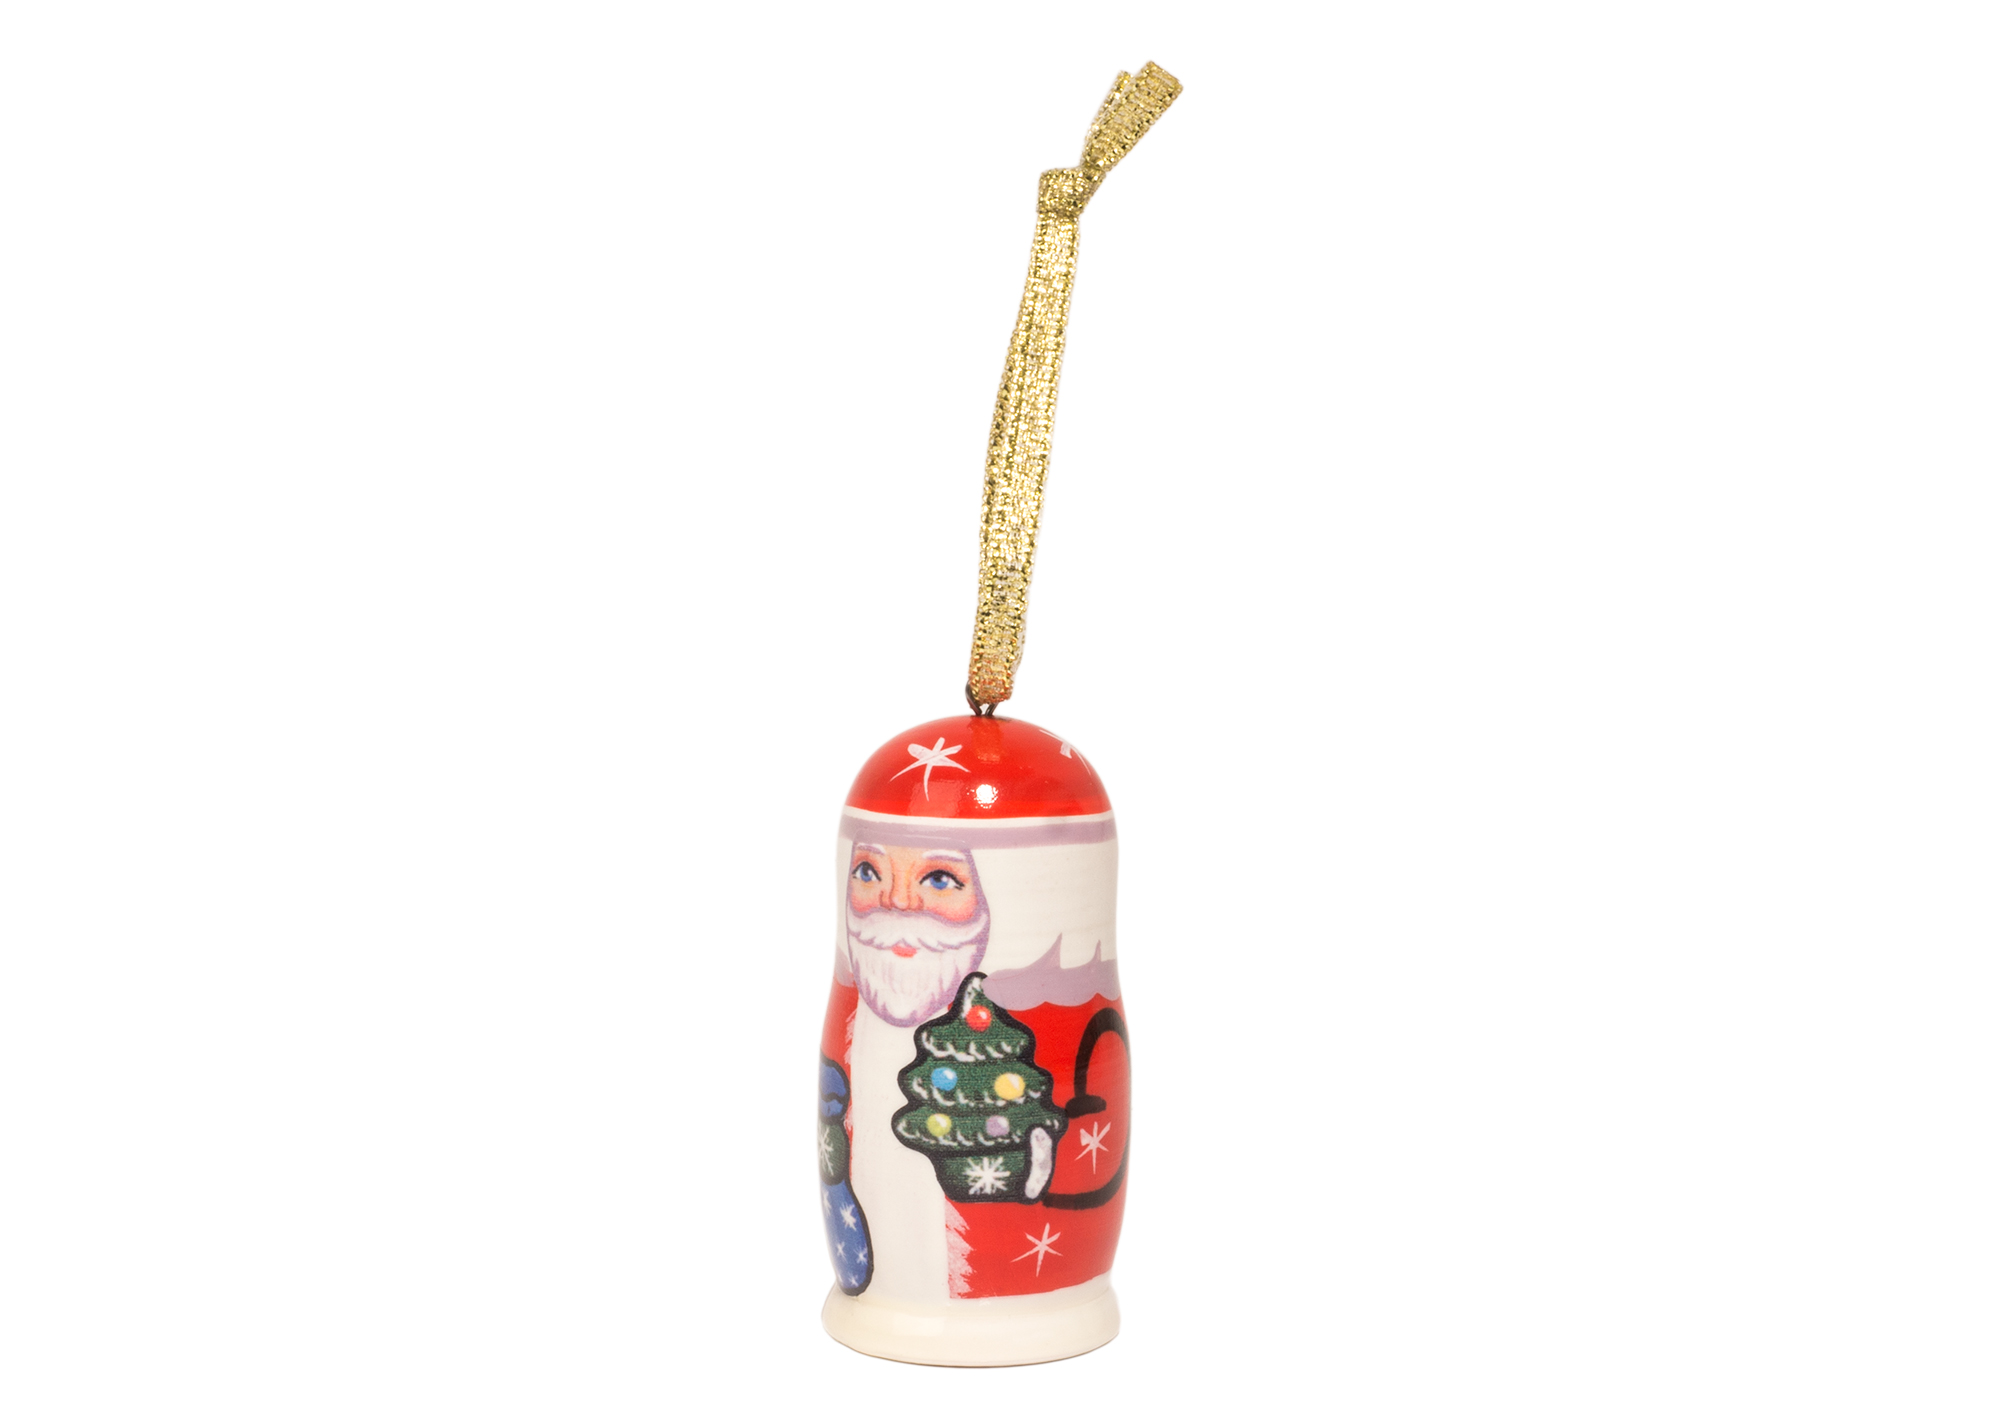 Buy Мини-елочное украшение "Дед Мороз" 3,75 см at GoldenCockerel.com